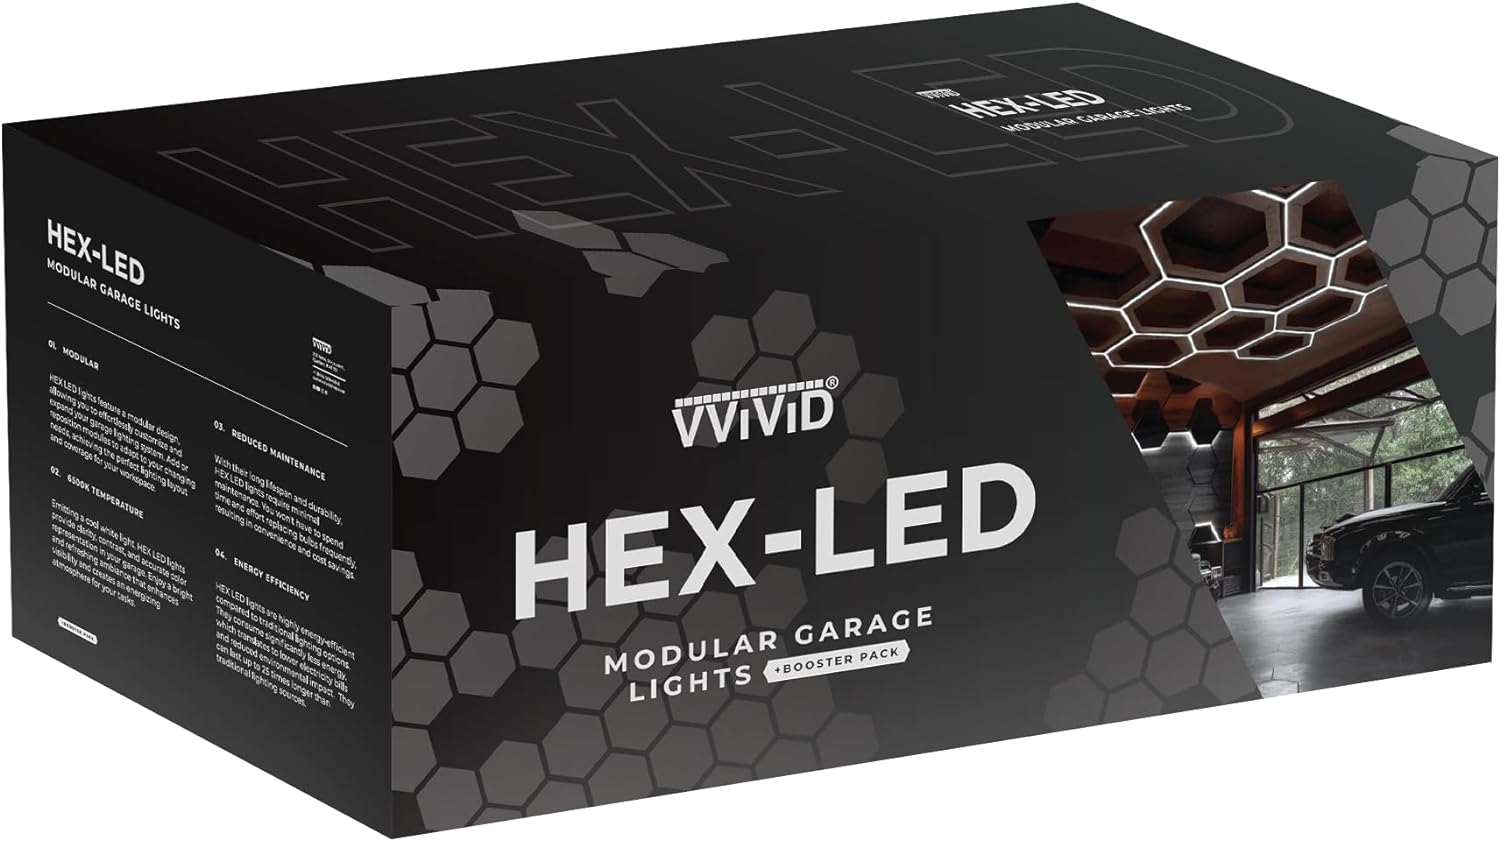 VViViD HEX-LED Modular Garage Lights + Booster Pack